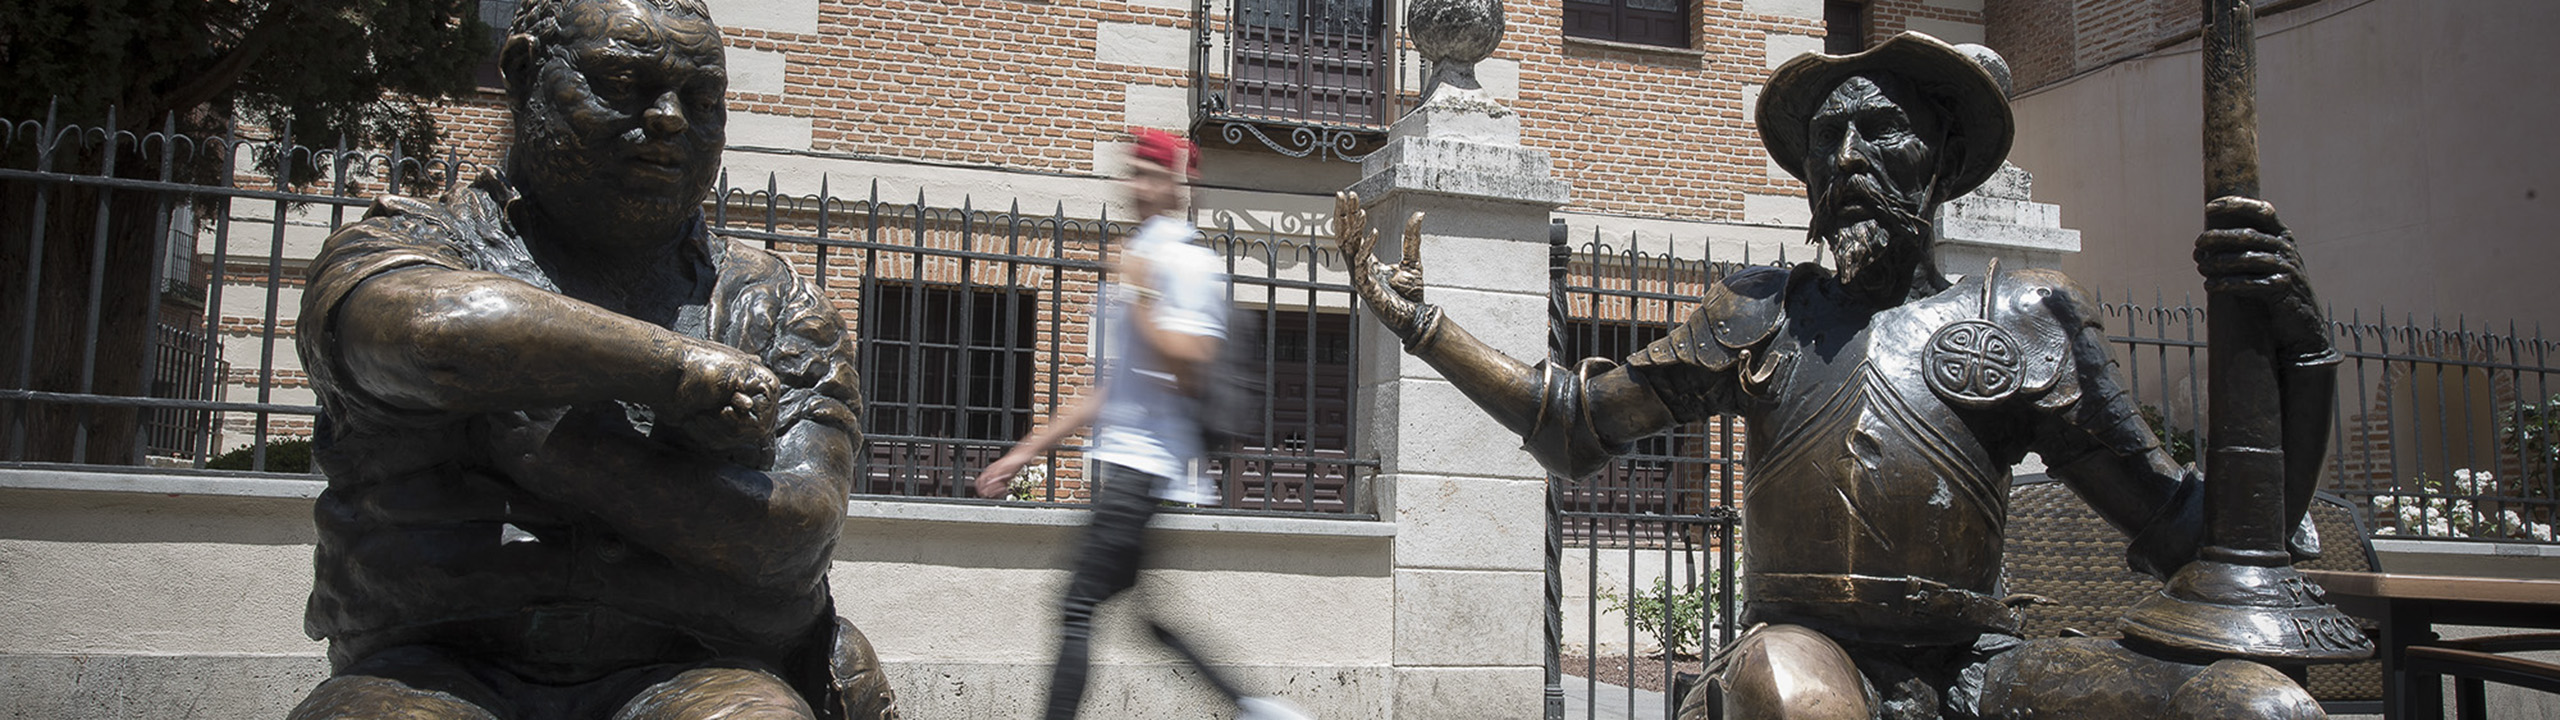 Estatuas de Don Quijote y Sancho frente a la casa natal de Cervantes.